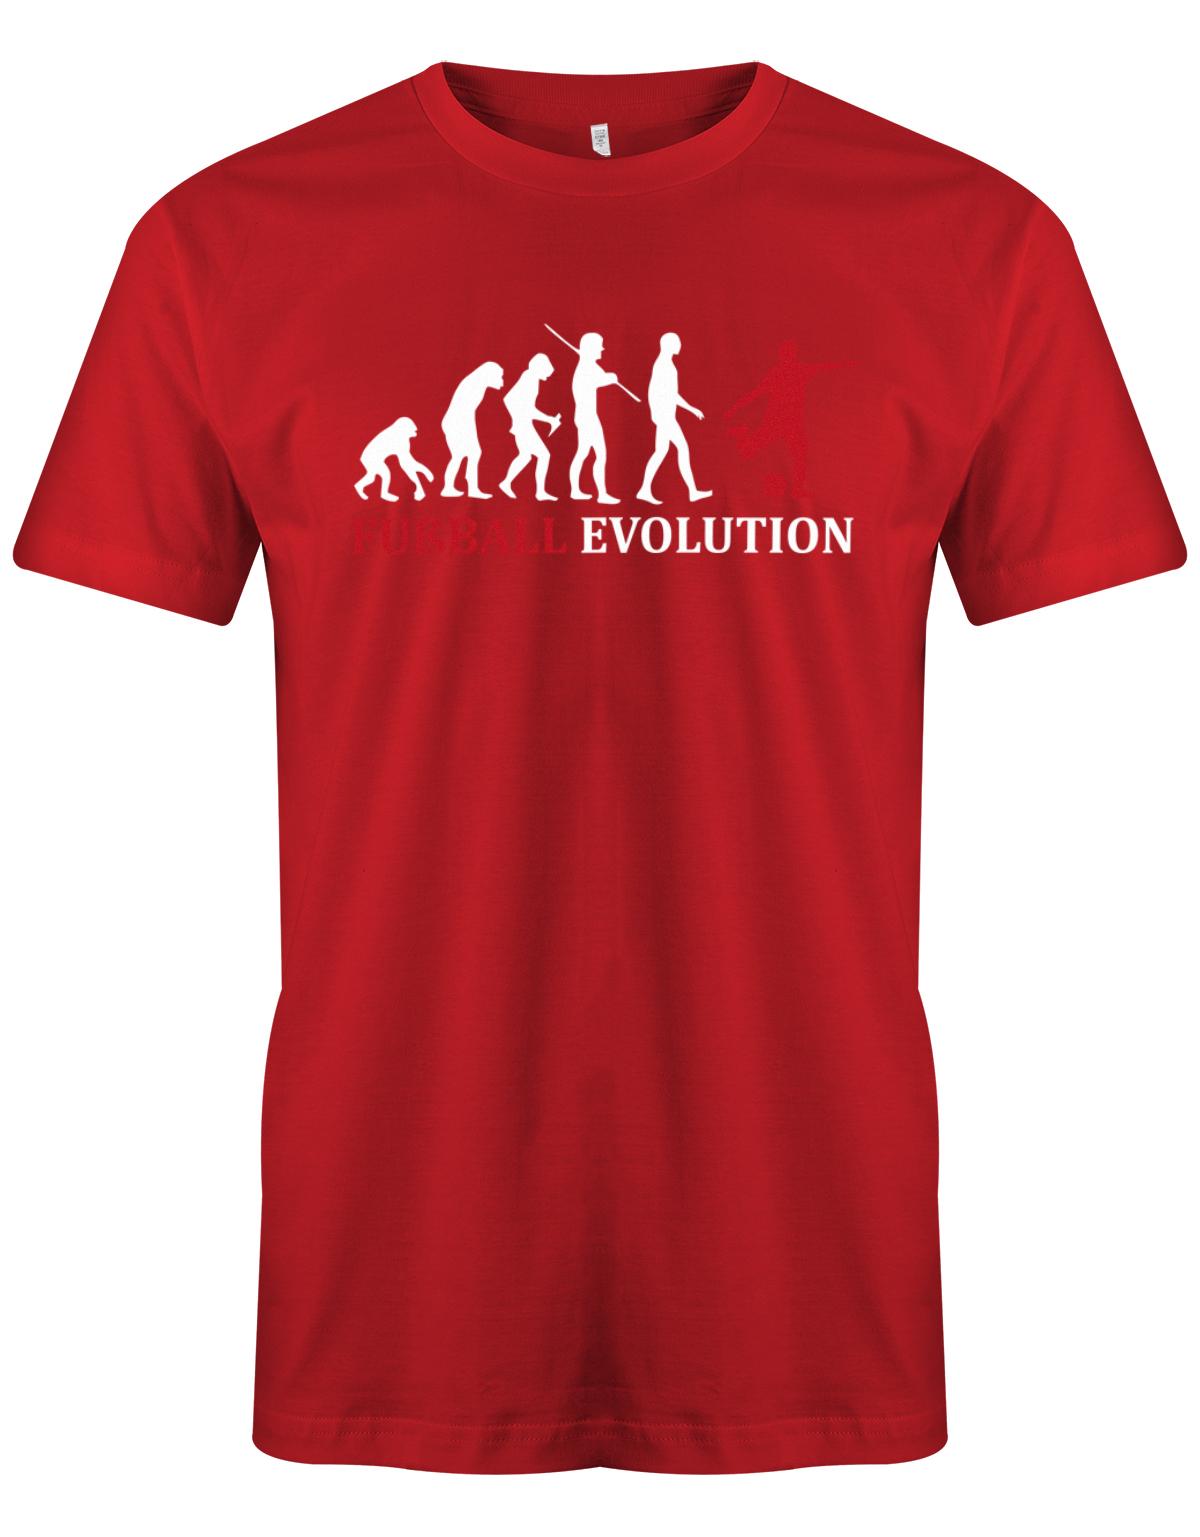 Fussball-Evolution-Herren-Shirt-Rot-Rot